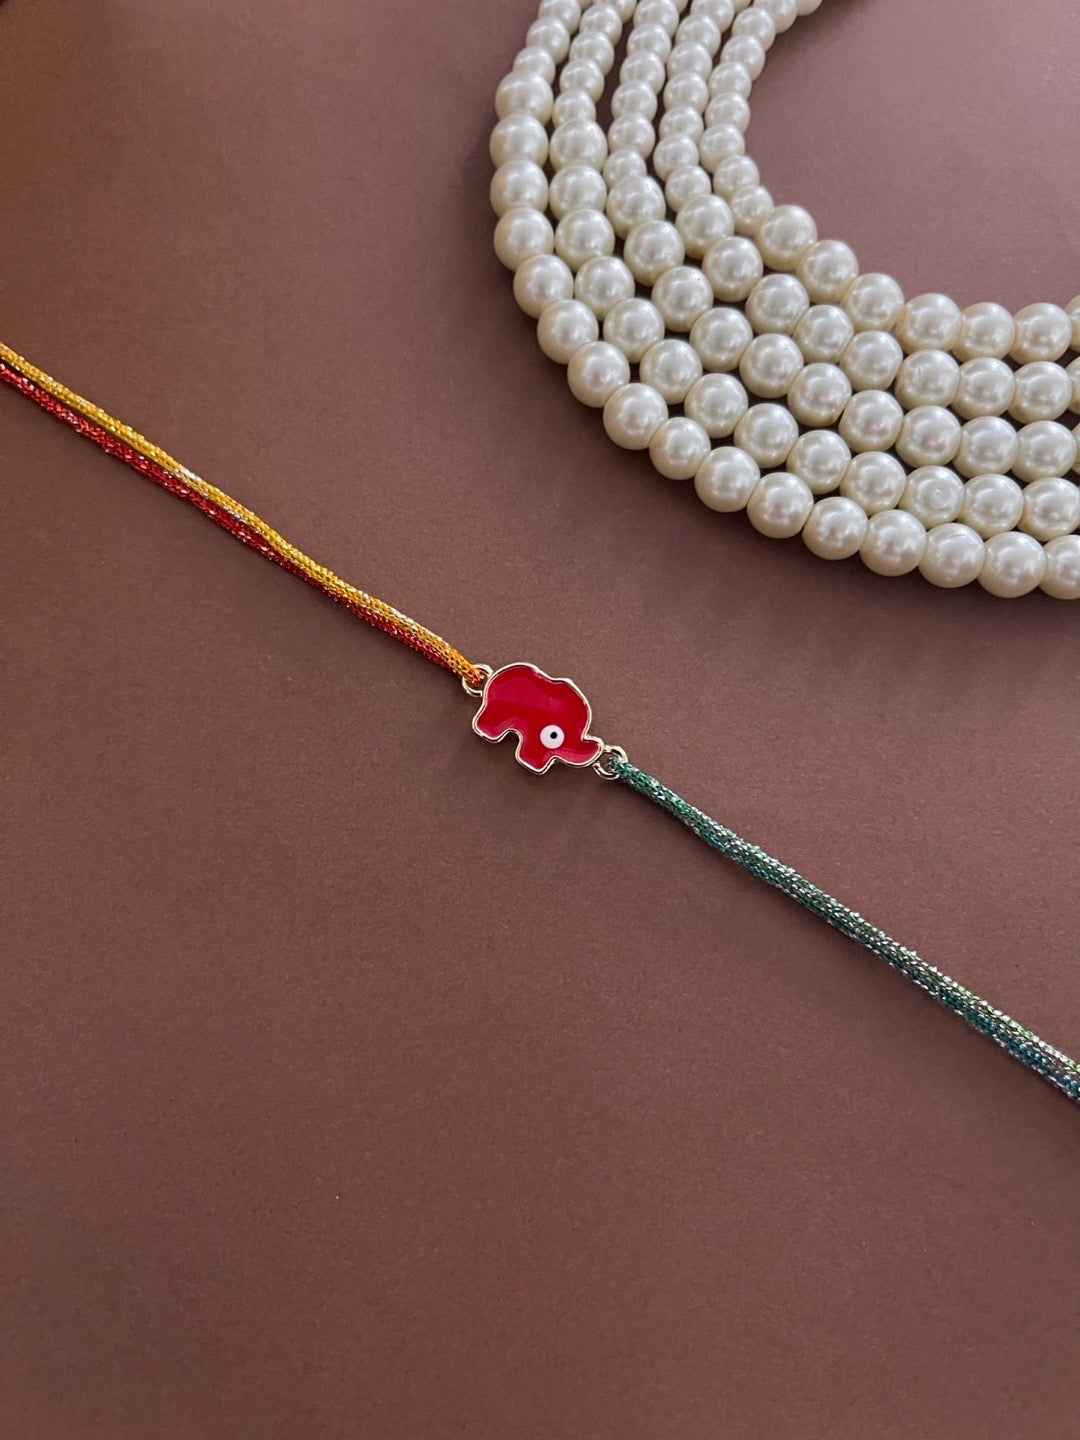 image for Designer Rakhi Red Elephant Evil Eye Charm With Multicolor Thread Rakhi For Rakshabandhan